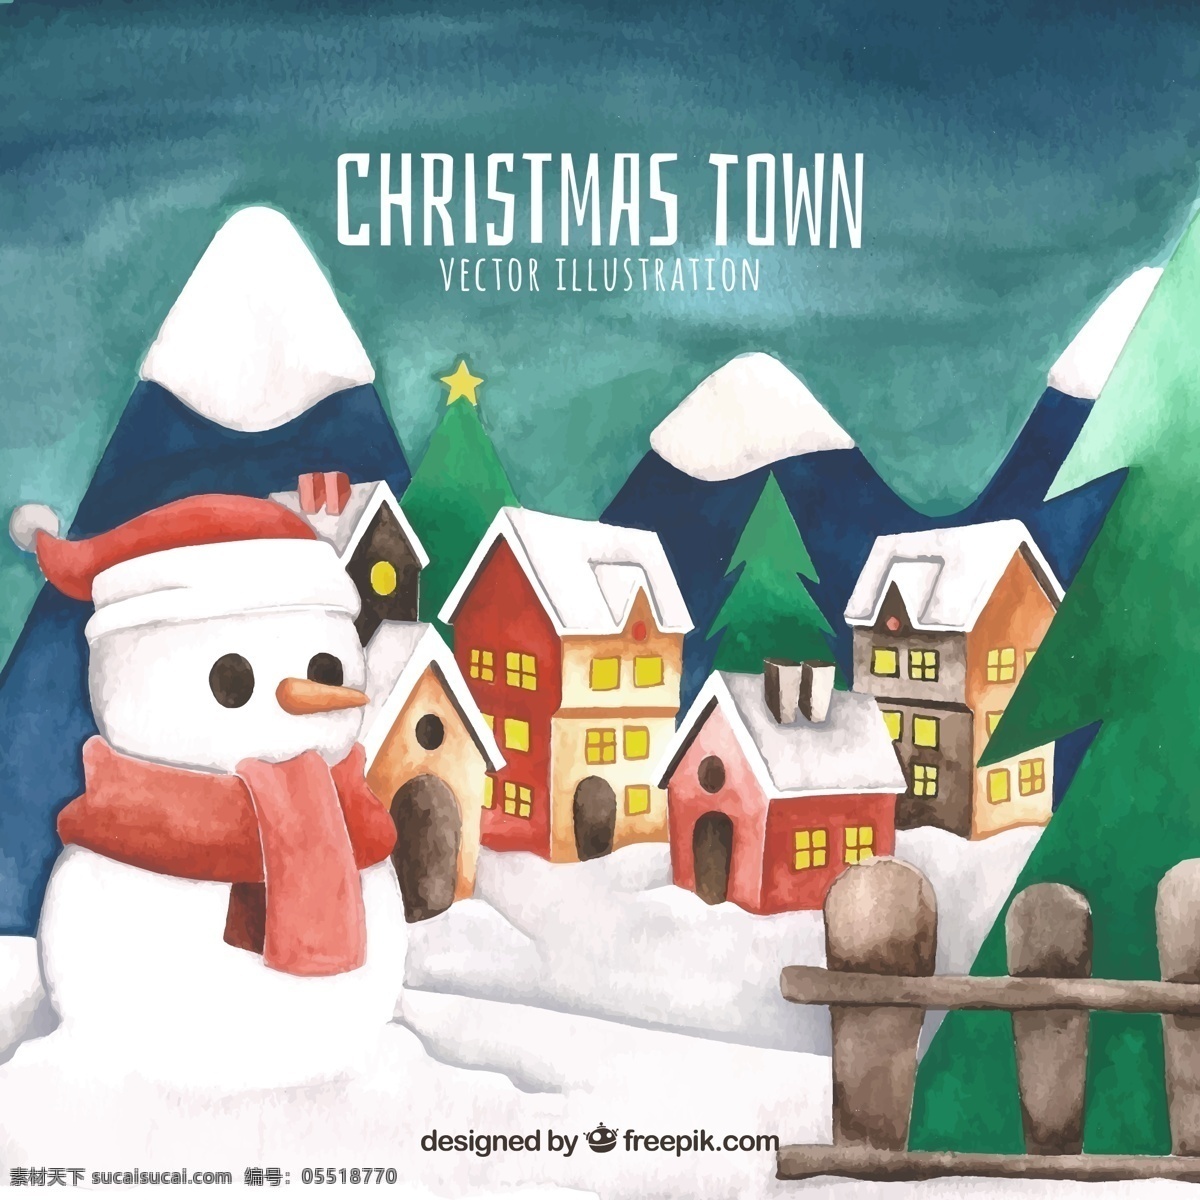 水彩 绘 圣诞 小镇 雪人 矢量图 房子 建筑 节日 浪漫 圣诞节 水彩绘 下雪